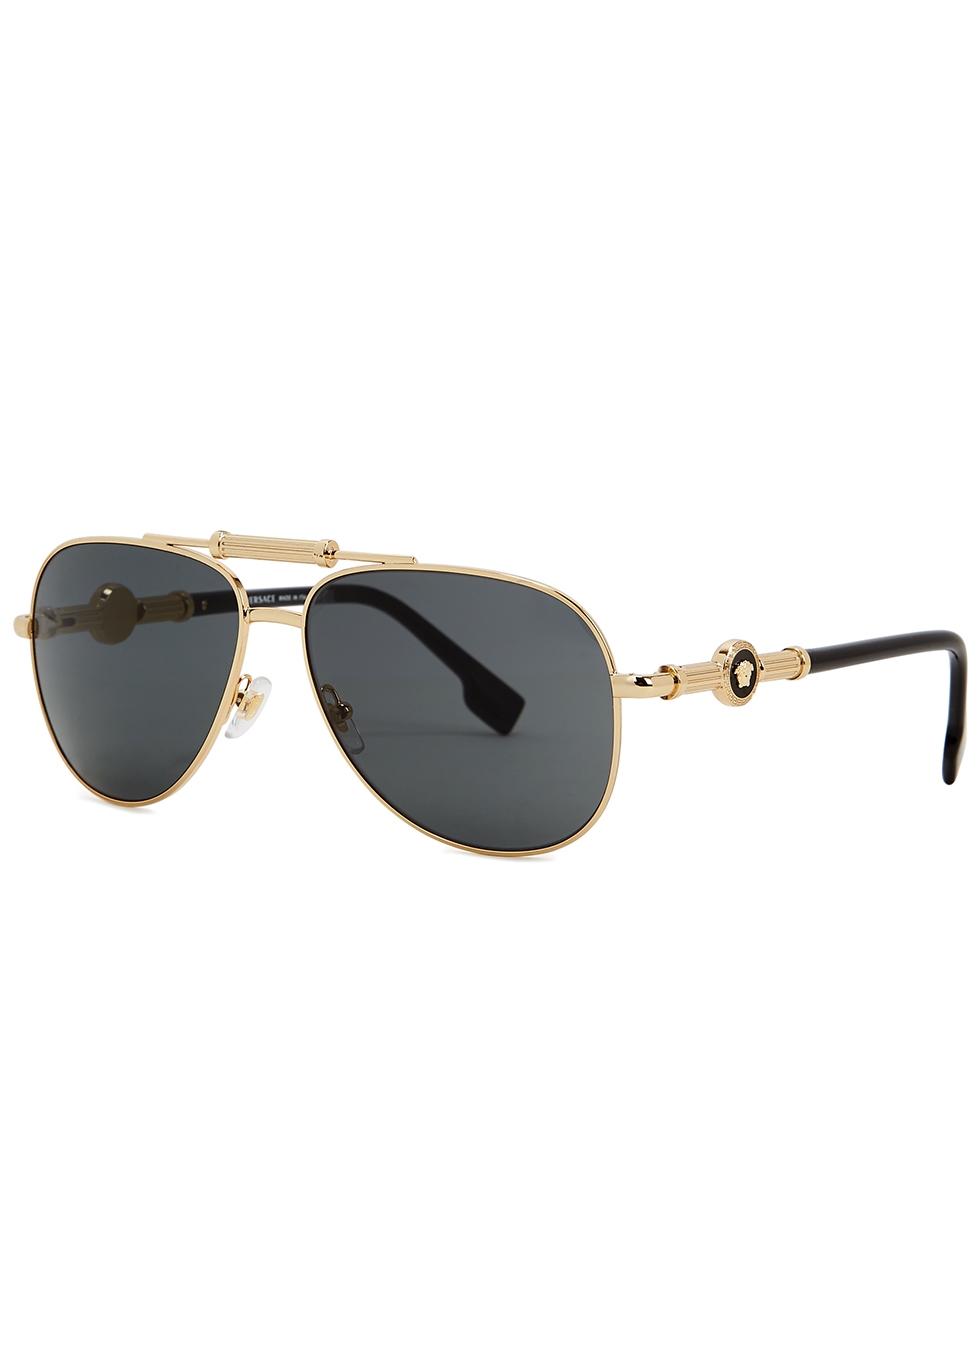 New Men's Unisex Aviato Classic Designer Shield Sunglasses Shades Glasses BZ118 